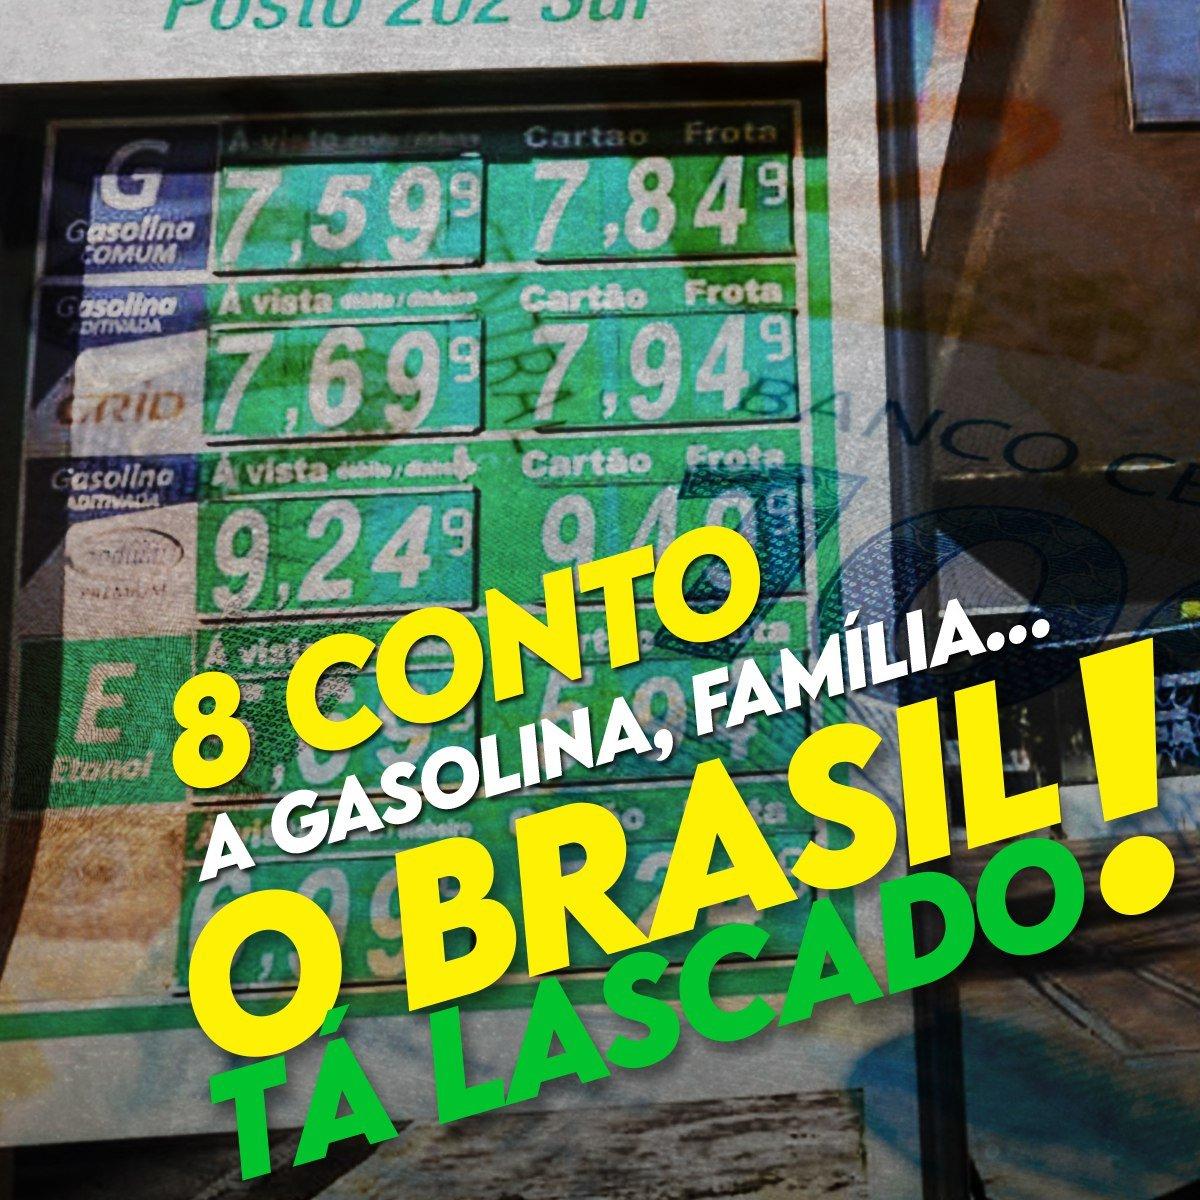 Tesoureiros - O Brasil tá muito lascado com galosina a 8 reais